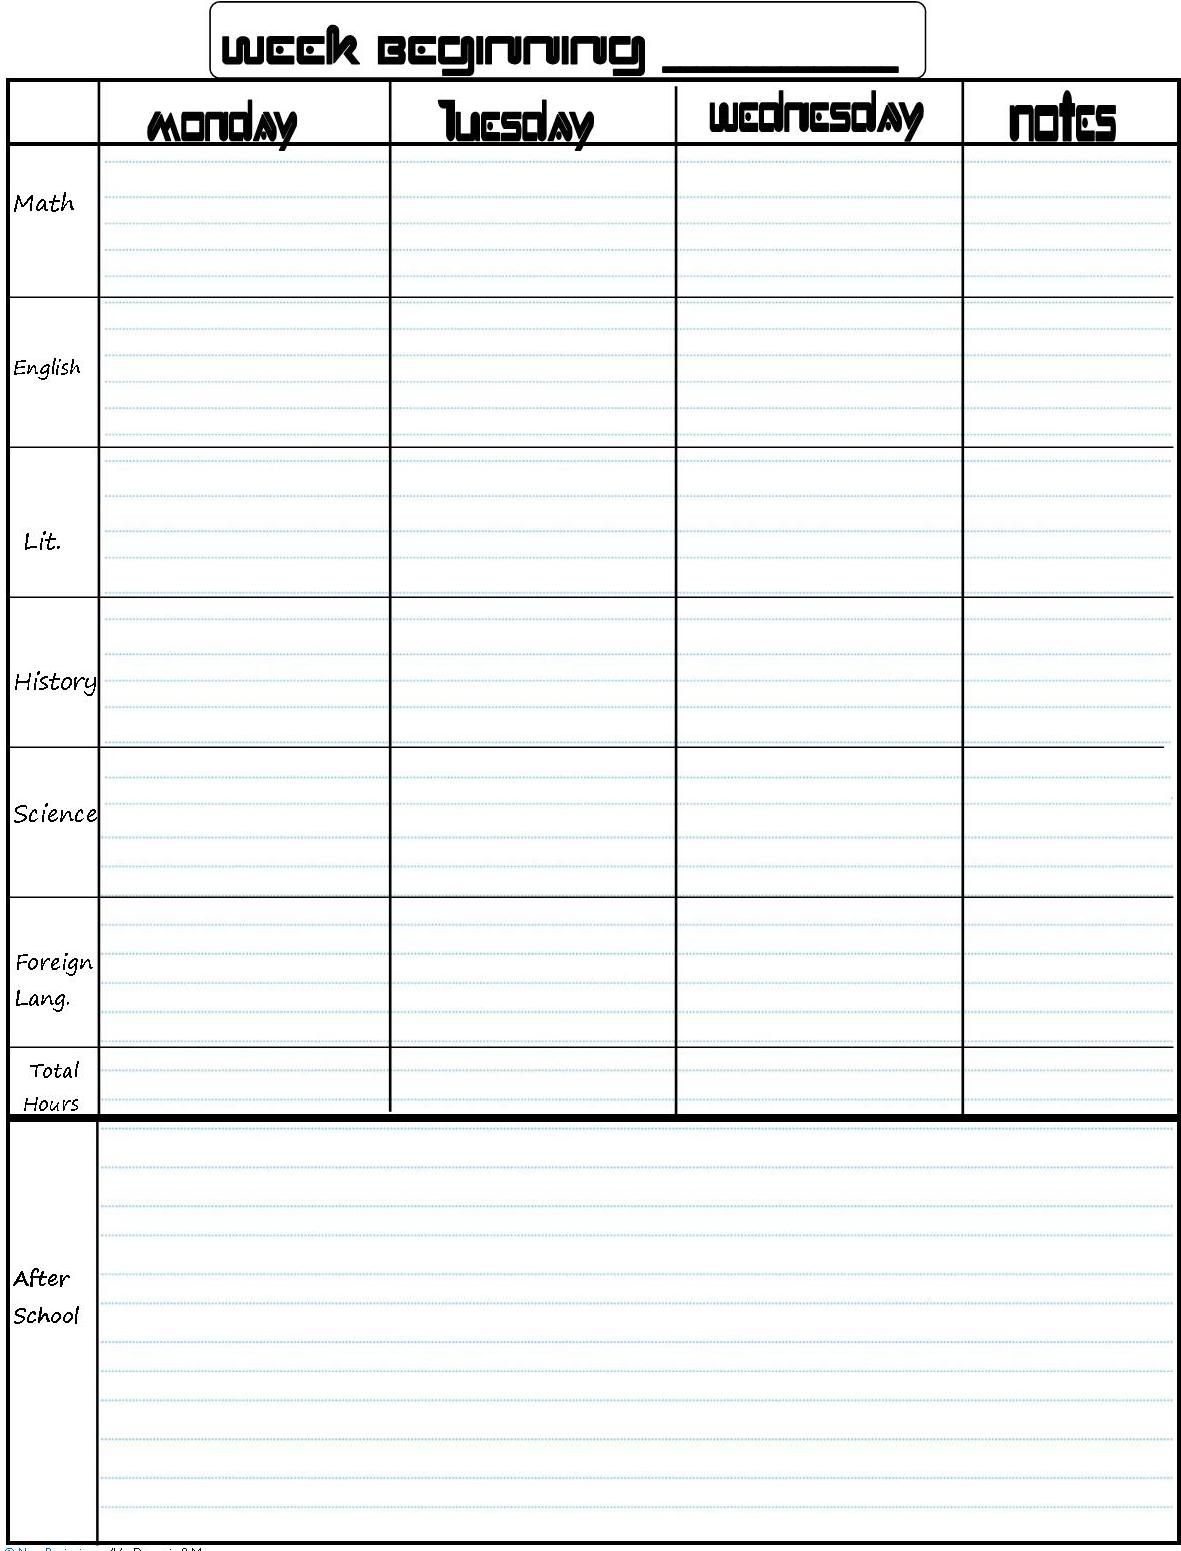 Free Printable School Planner Weekly Academic Template Schedule 